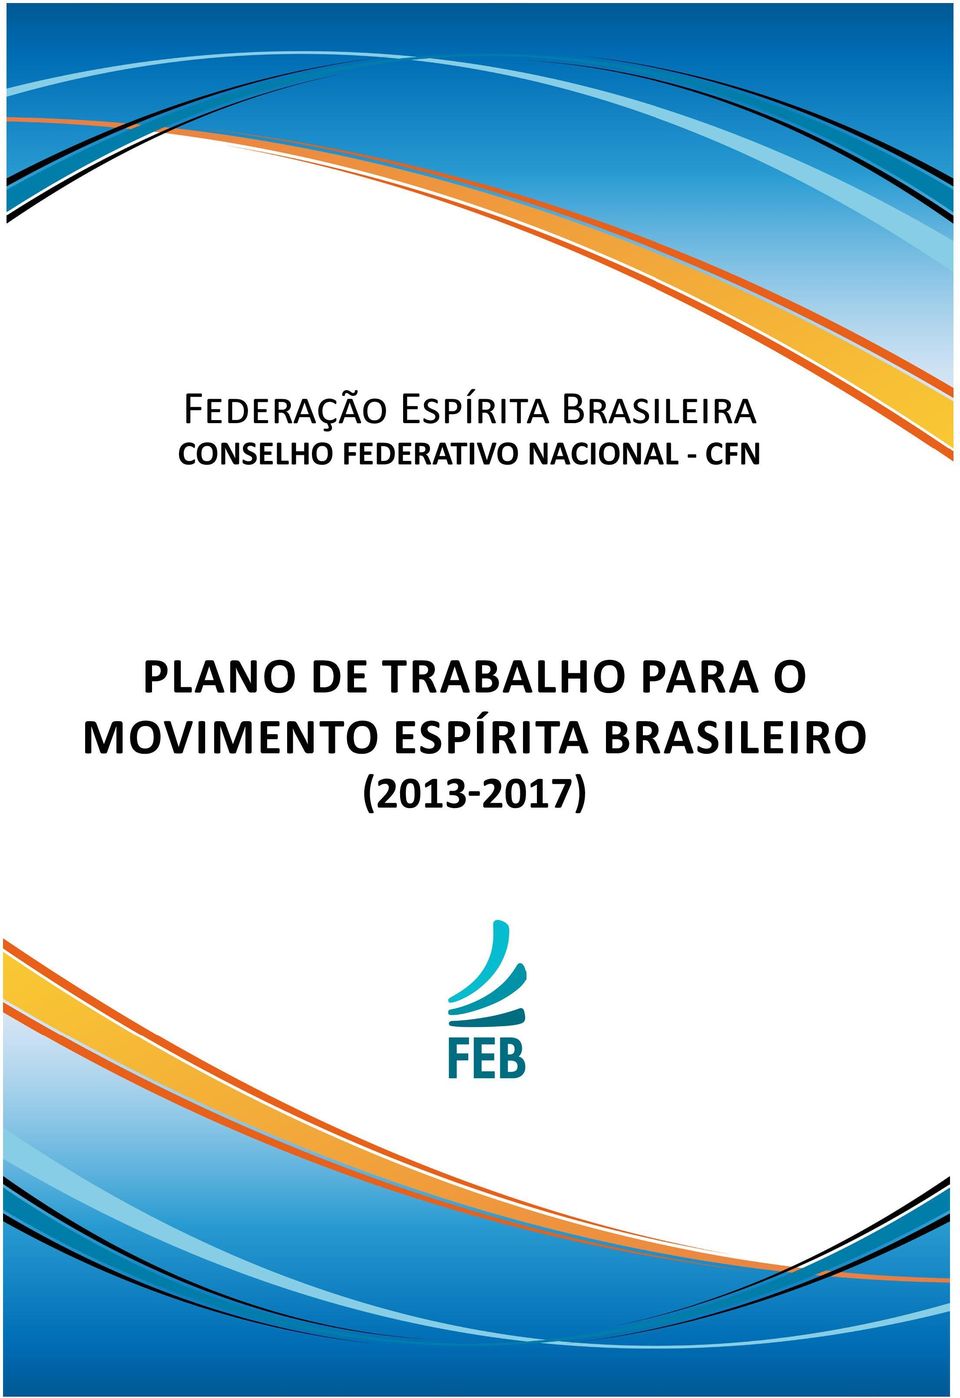 CFN PLANO DE TRABALHO PARA O